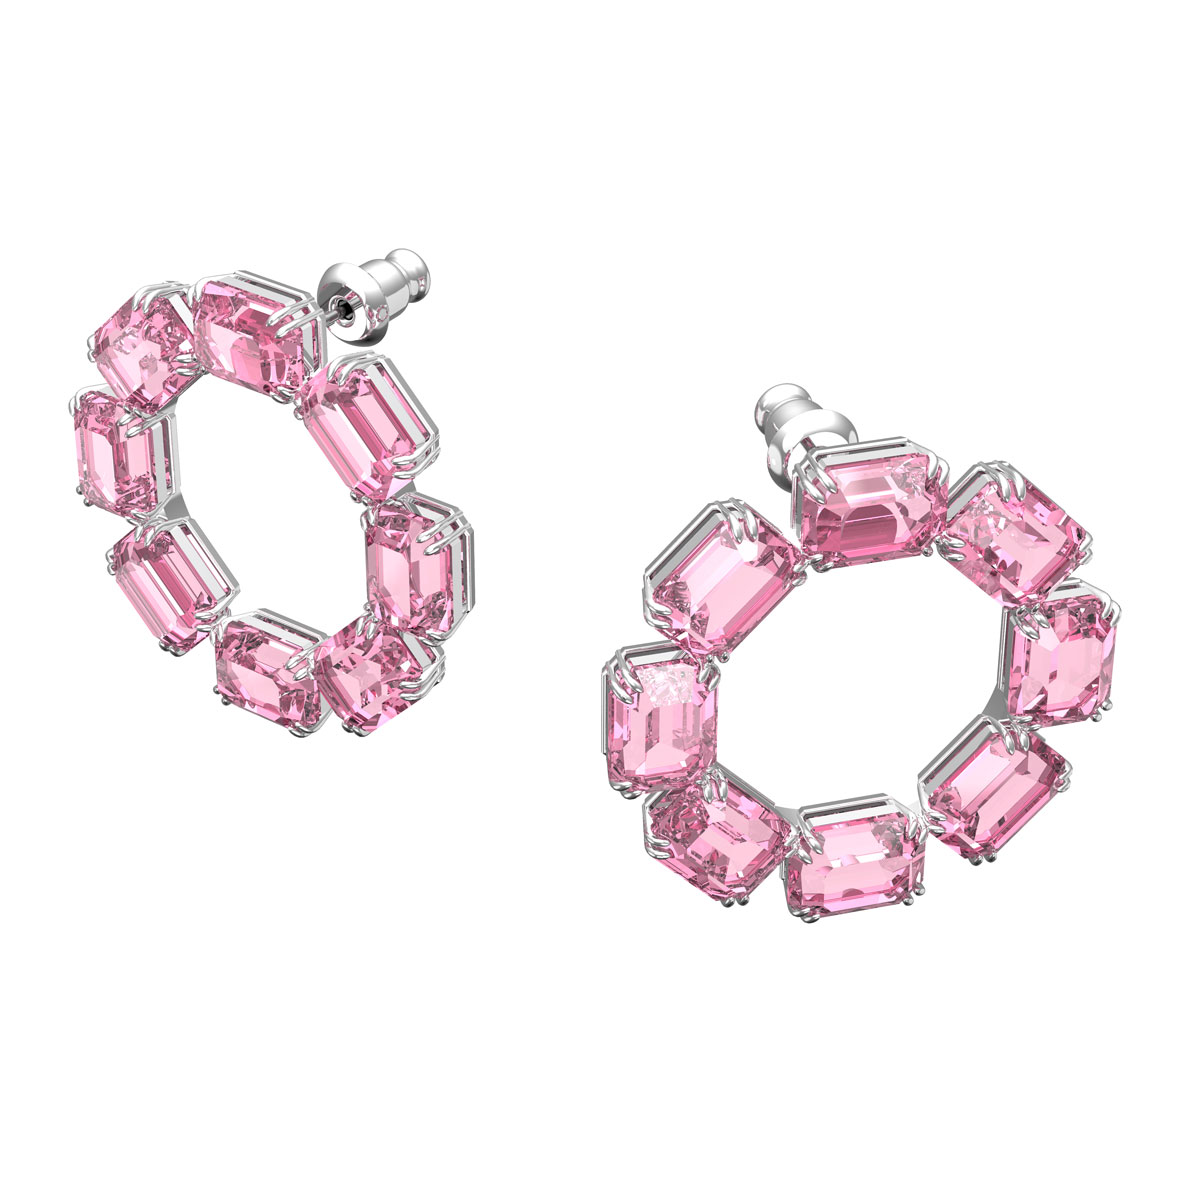 Swarovski Millenia Hoop Earrings, Octagon Cut Crystals, Pink, Rhodium Plated